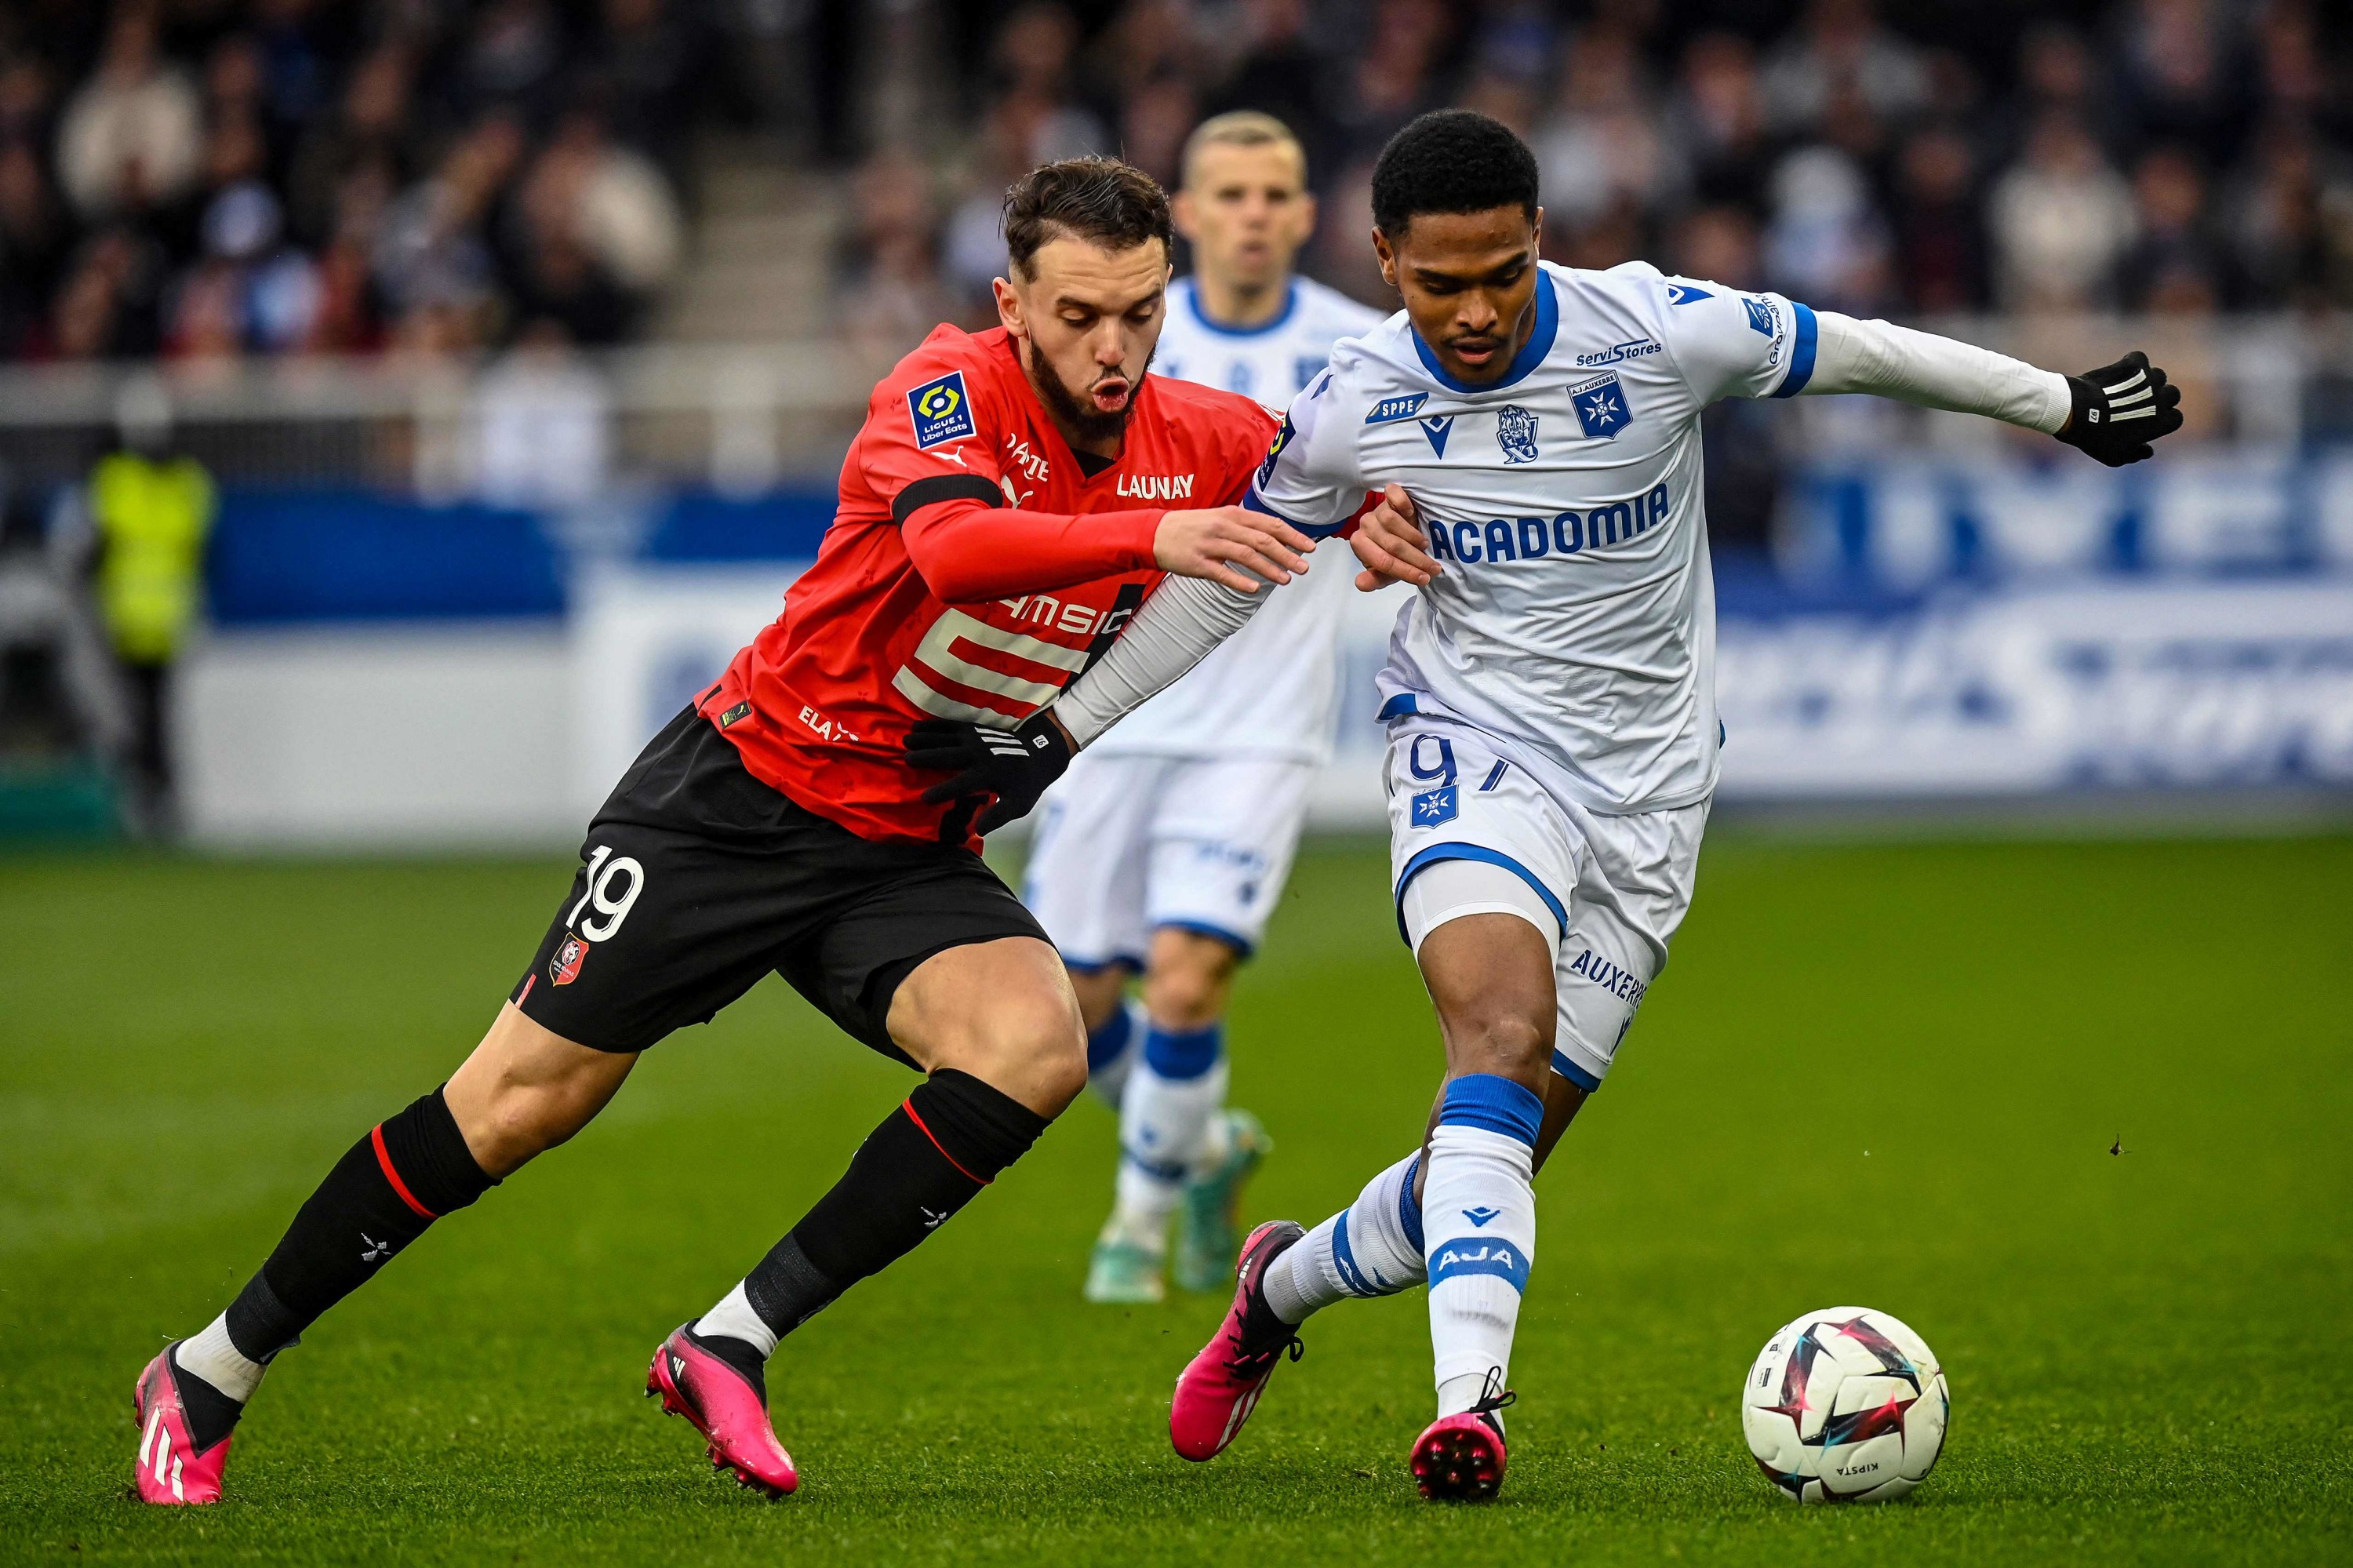 DIRECT - Ligue 1: Auxerre et Rennes se neutralisent dans un match fermé